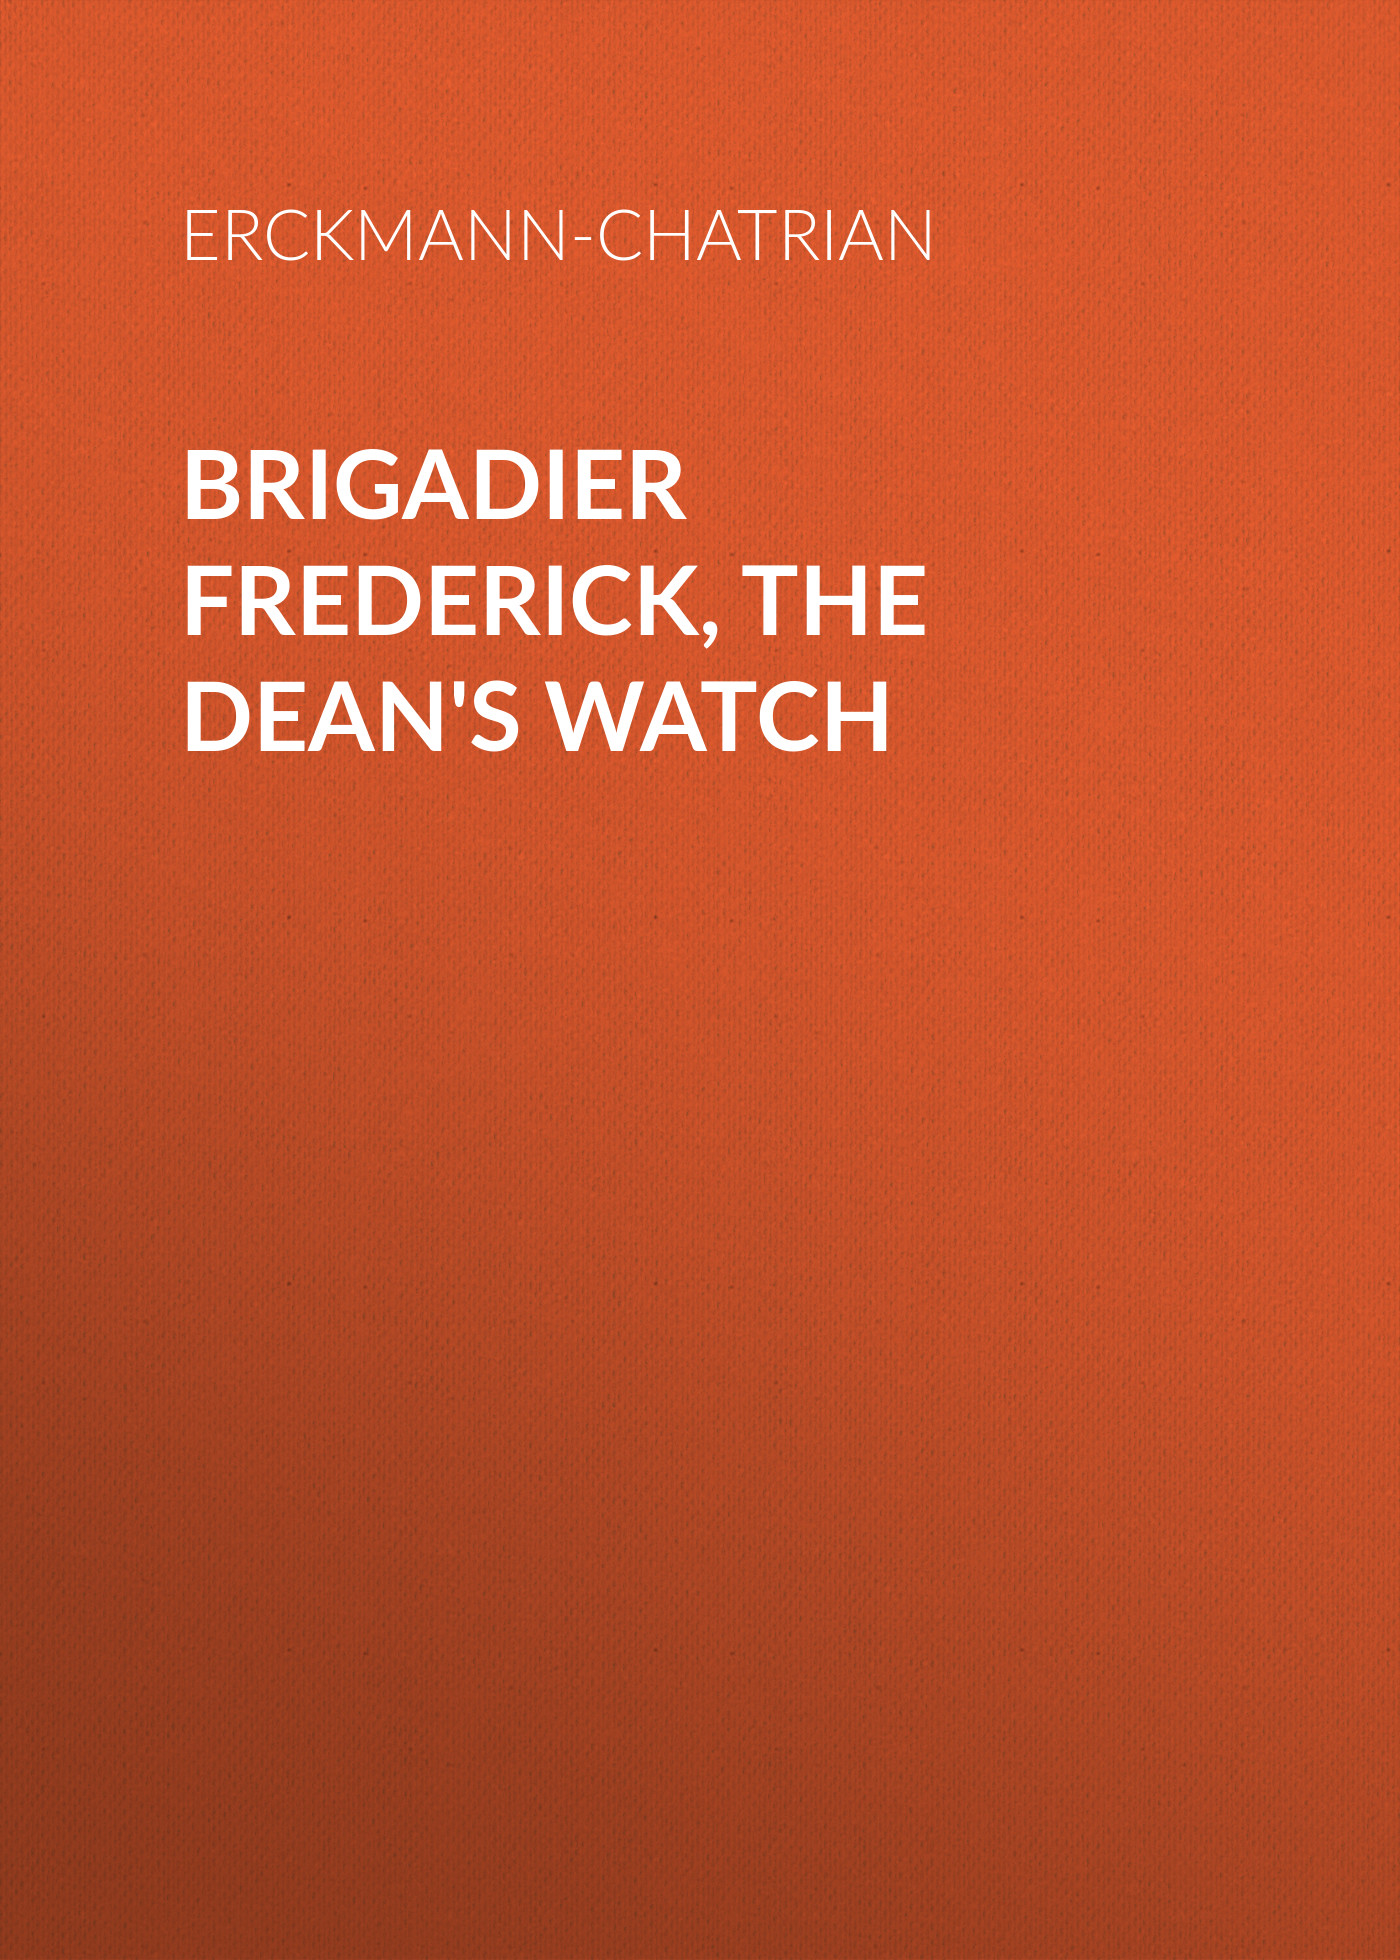 Книга Brigadier Frederick, The Dean's Watch из серии , созданная  Erckmann-Chatrian, может относится к жанру Зарубежная старинная литература, Зарубежная классика. Стоимость электронной книги Brigadier Frederick, The Dean's Watch с идентификатором 24714345 составляет 0 руб.